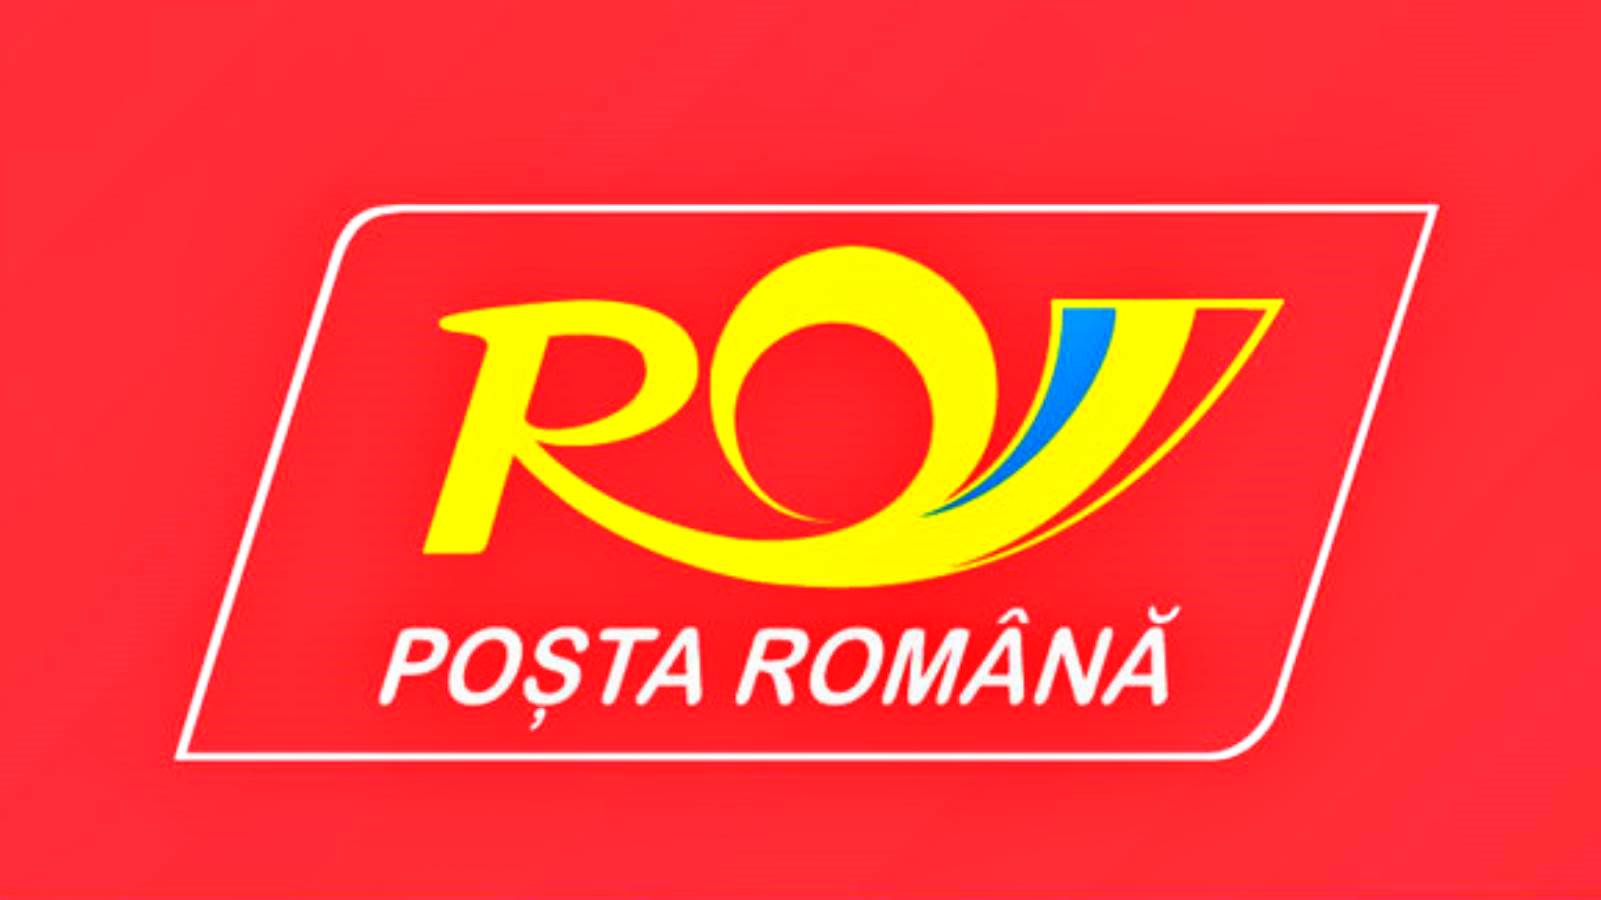 La decisión del Correo Rumano fue comunicada a MILLONES de rumanos